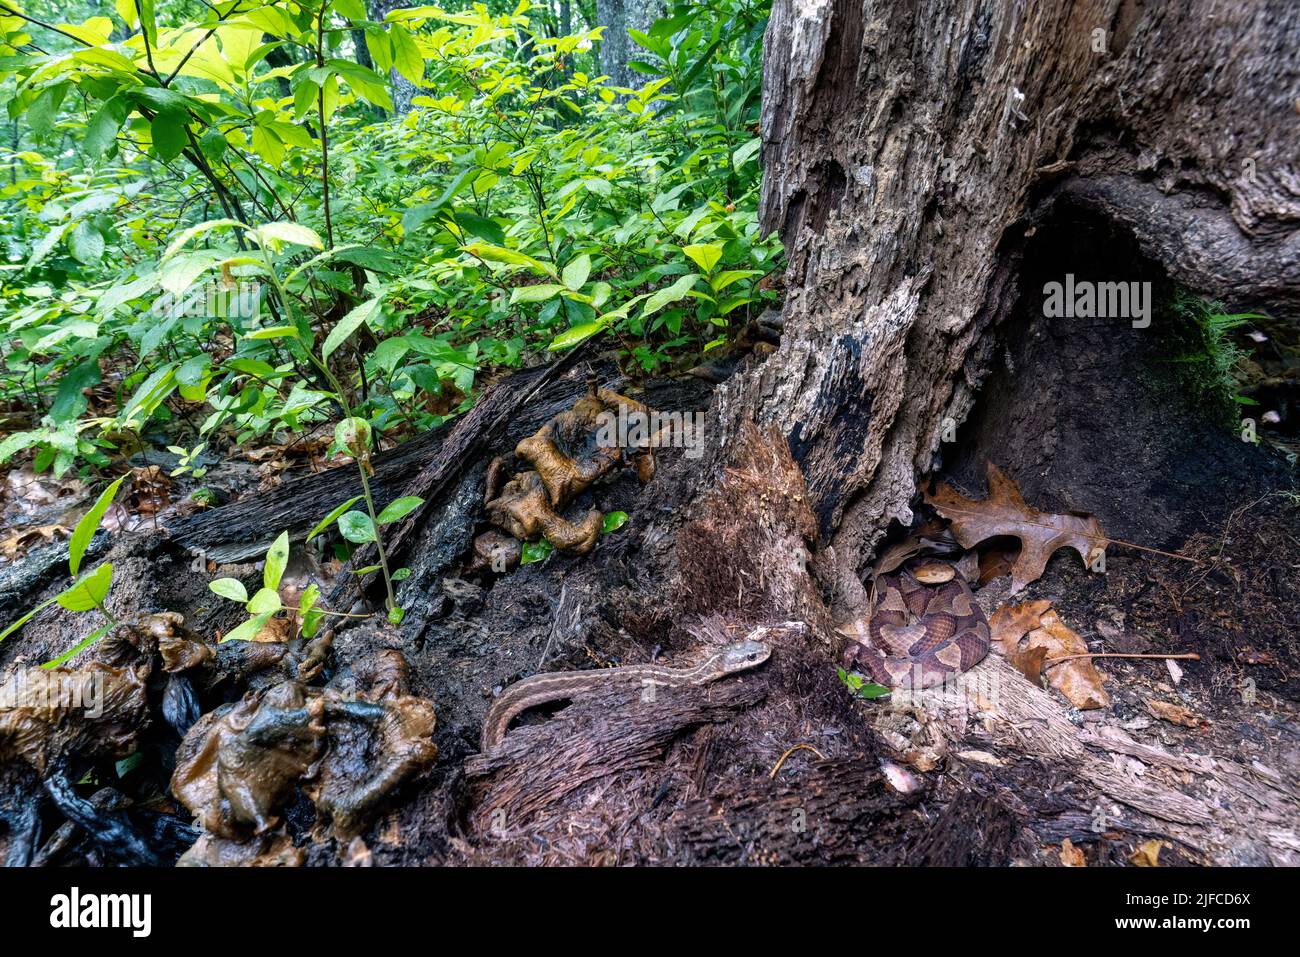 La testa di copperone orientale (Agkistrodon contortrix) si avvolse in un ceppo di albero mentre un serpente di garter orientale ignoziente (Thamnophis sirtalis sirtalis) si avvicina Foto Stock